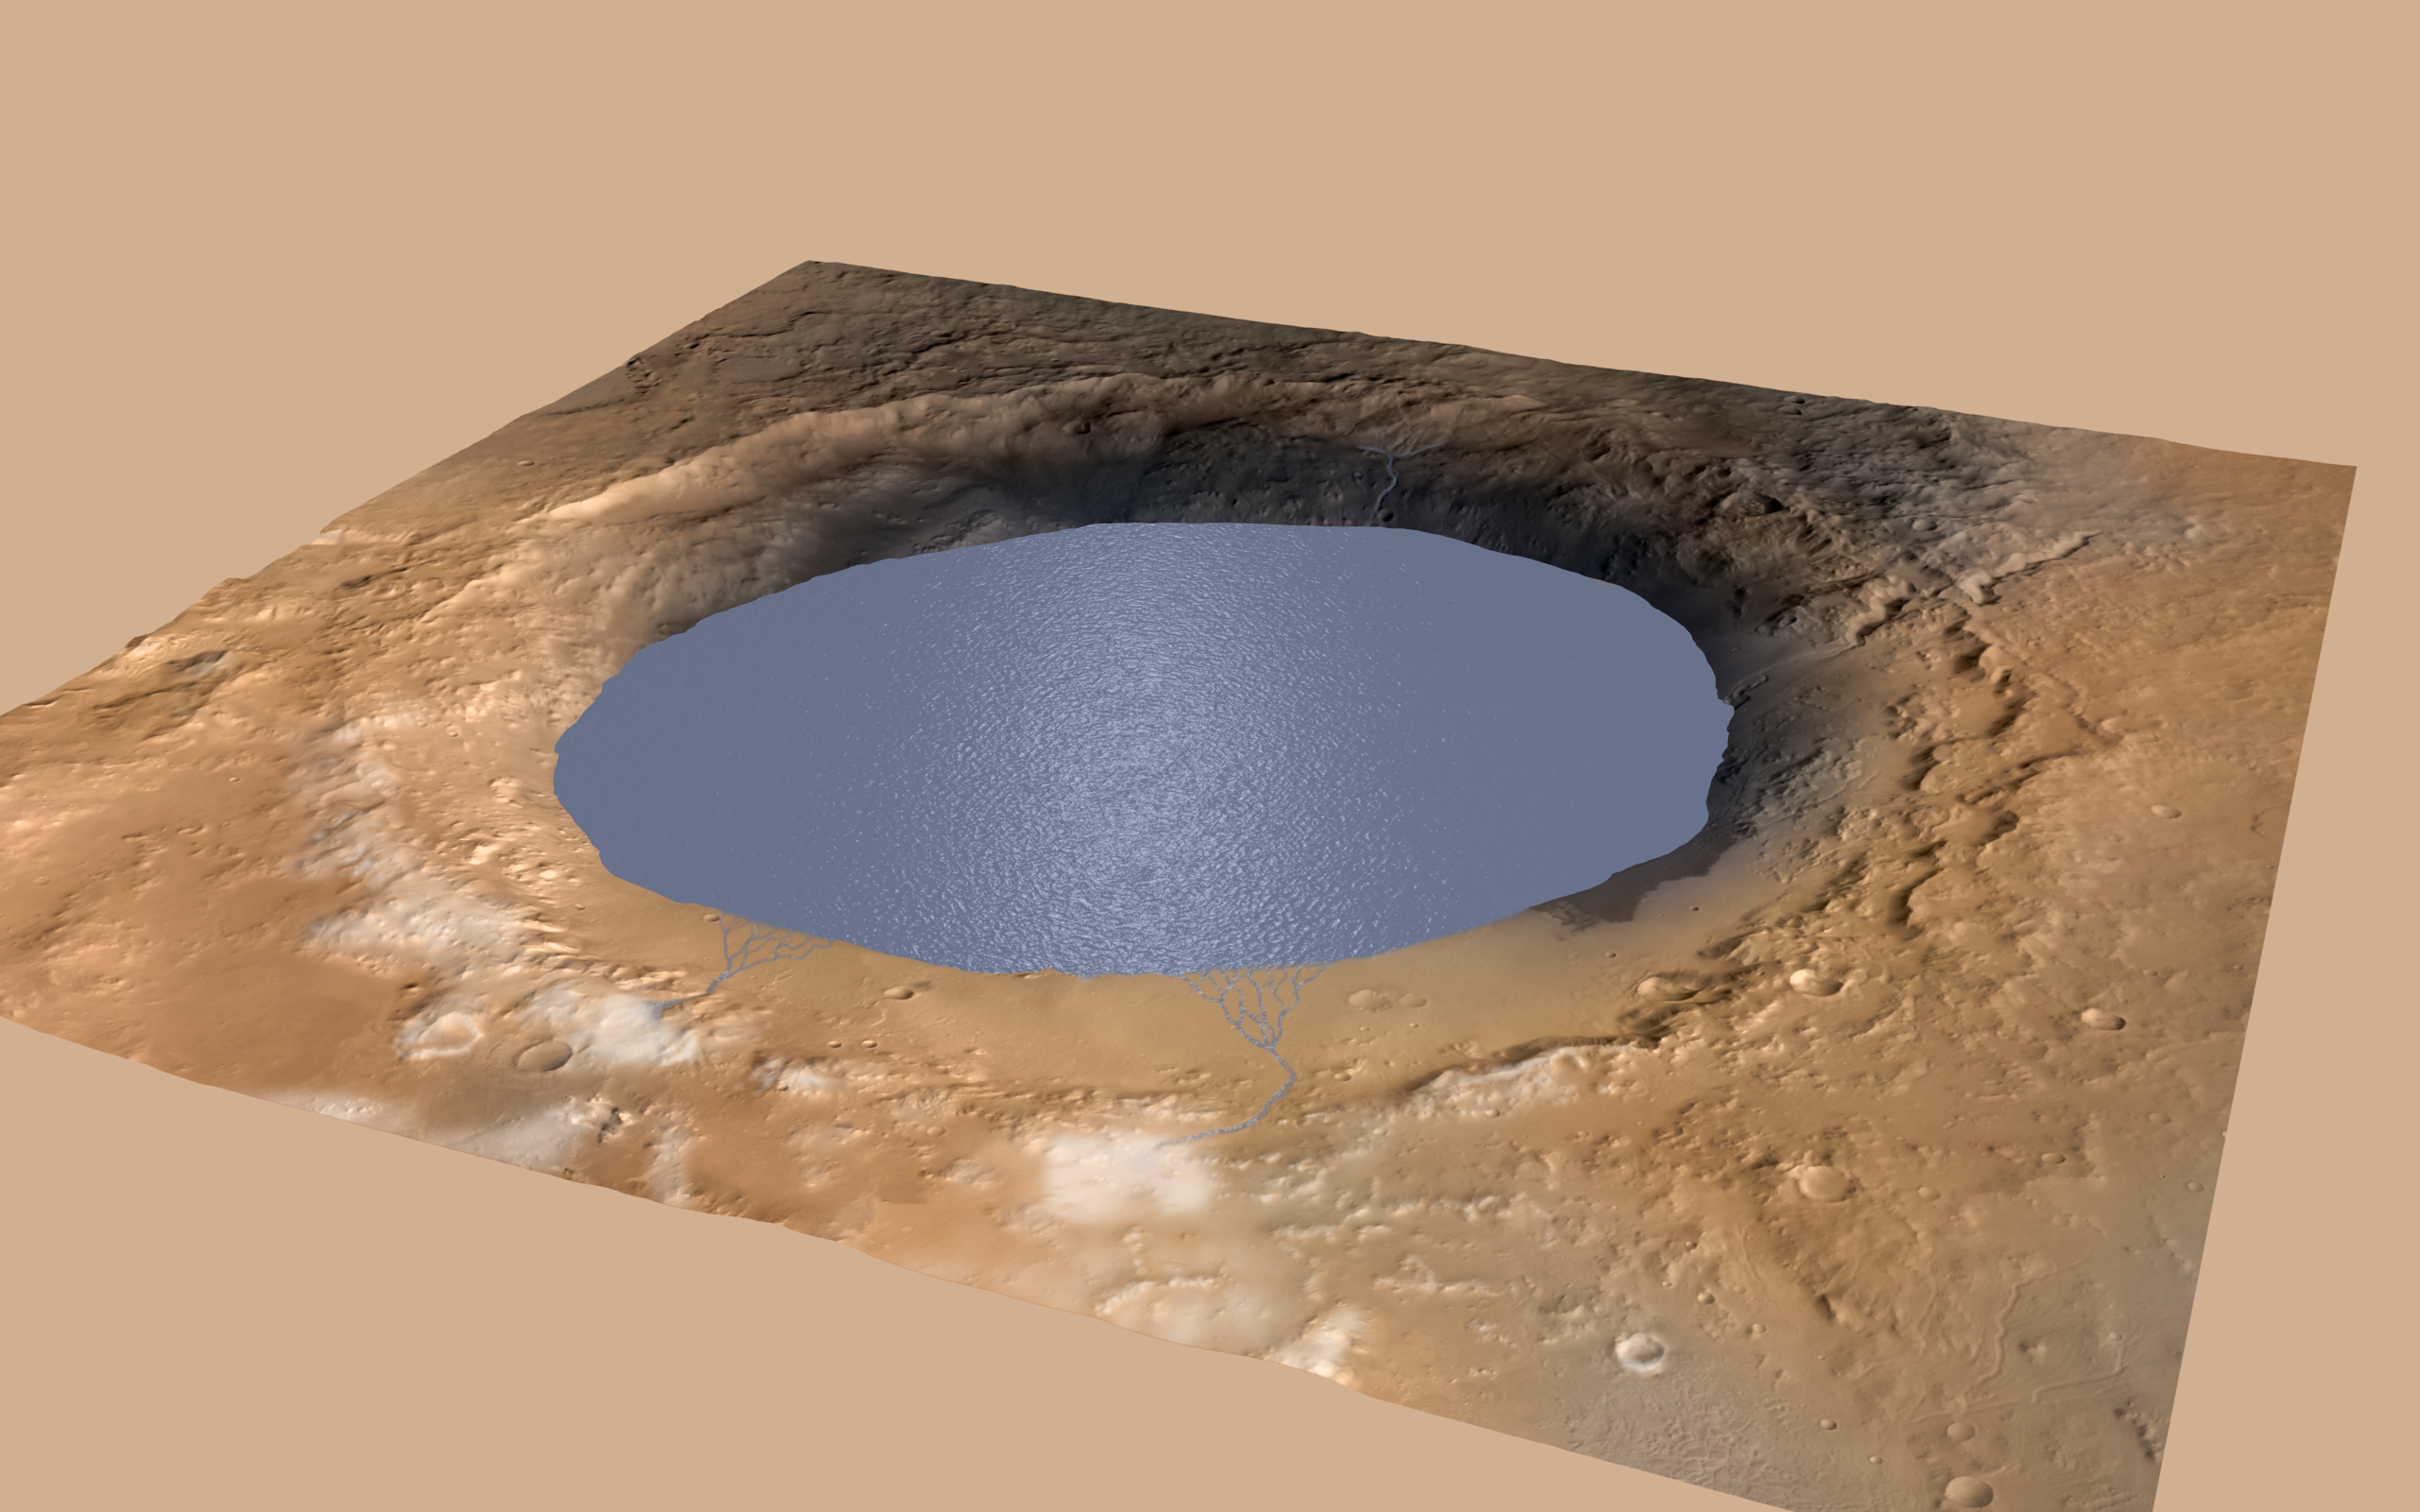 العثور على الماء في المريخ